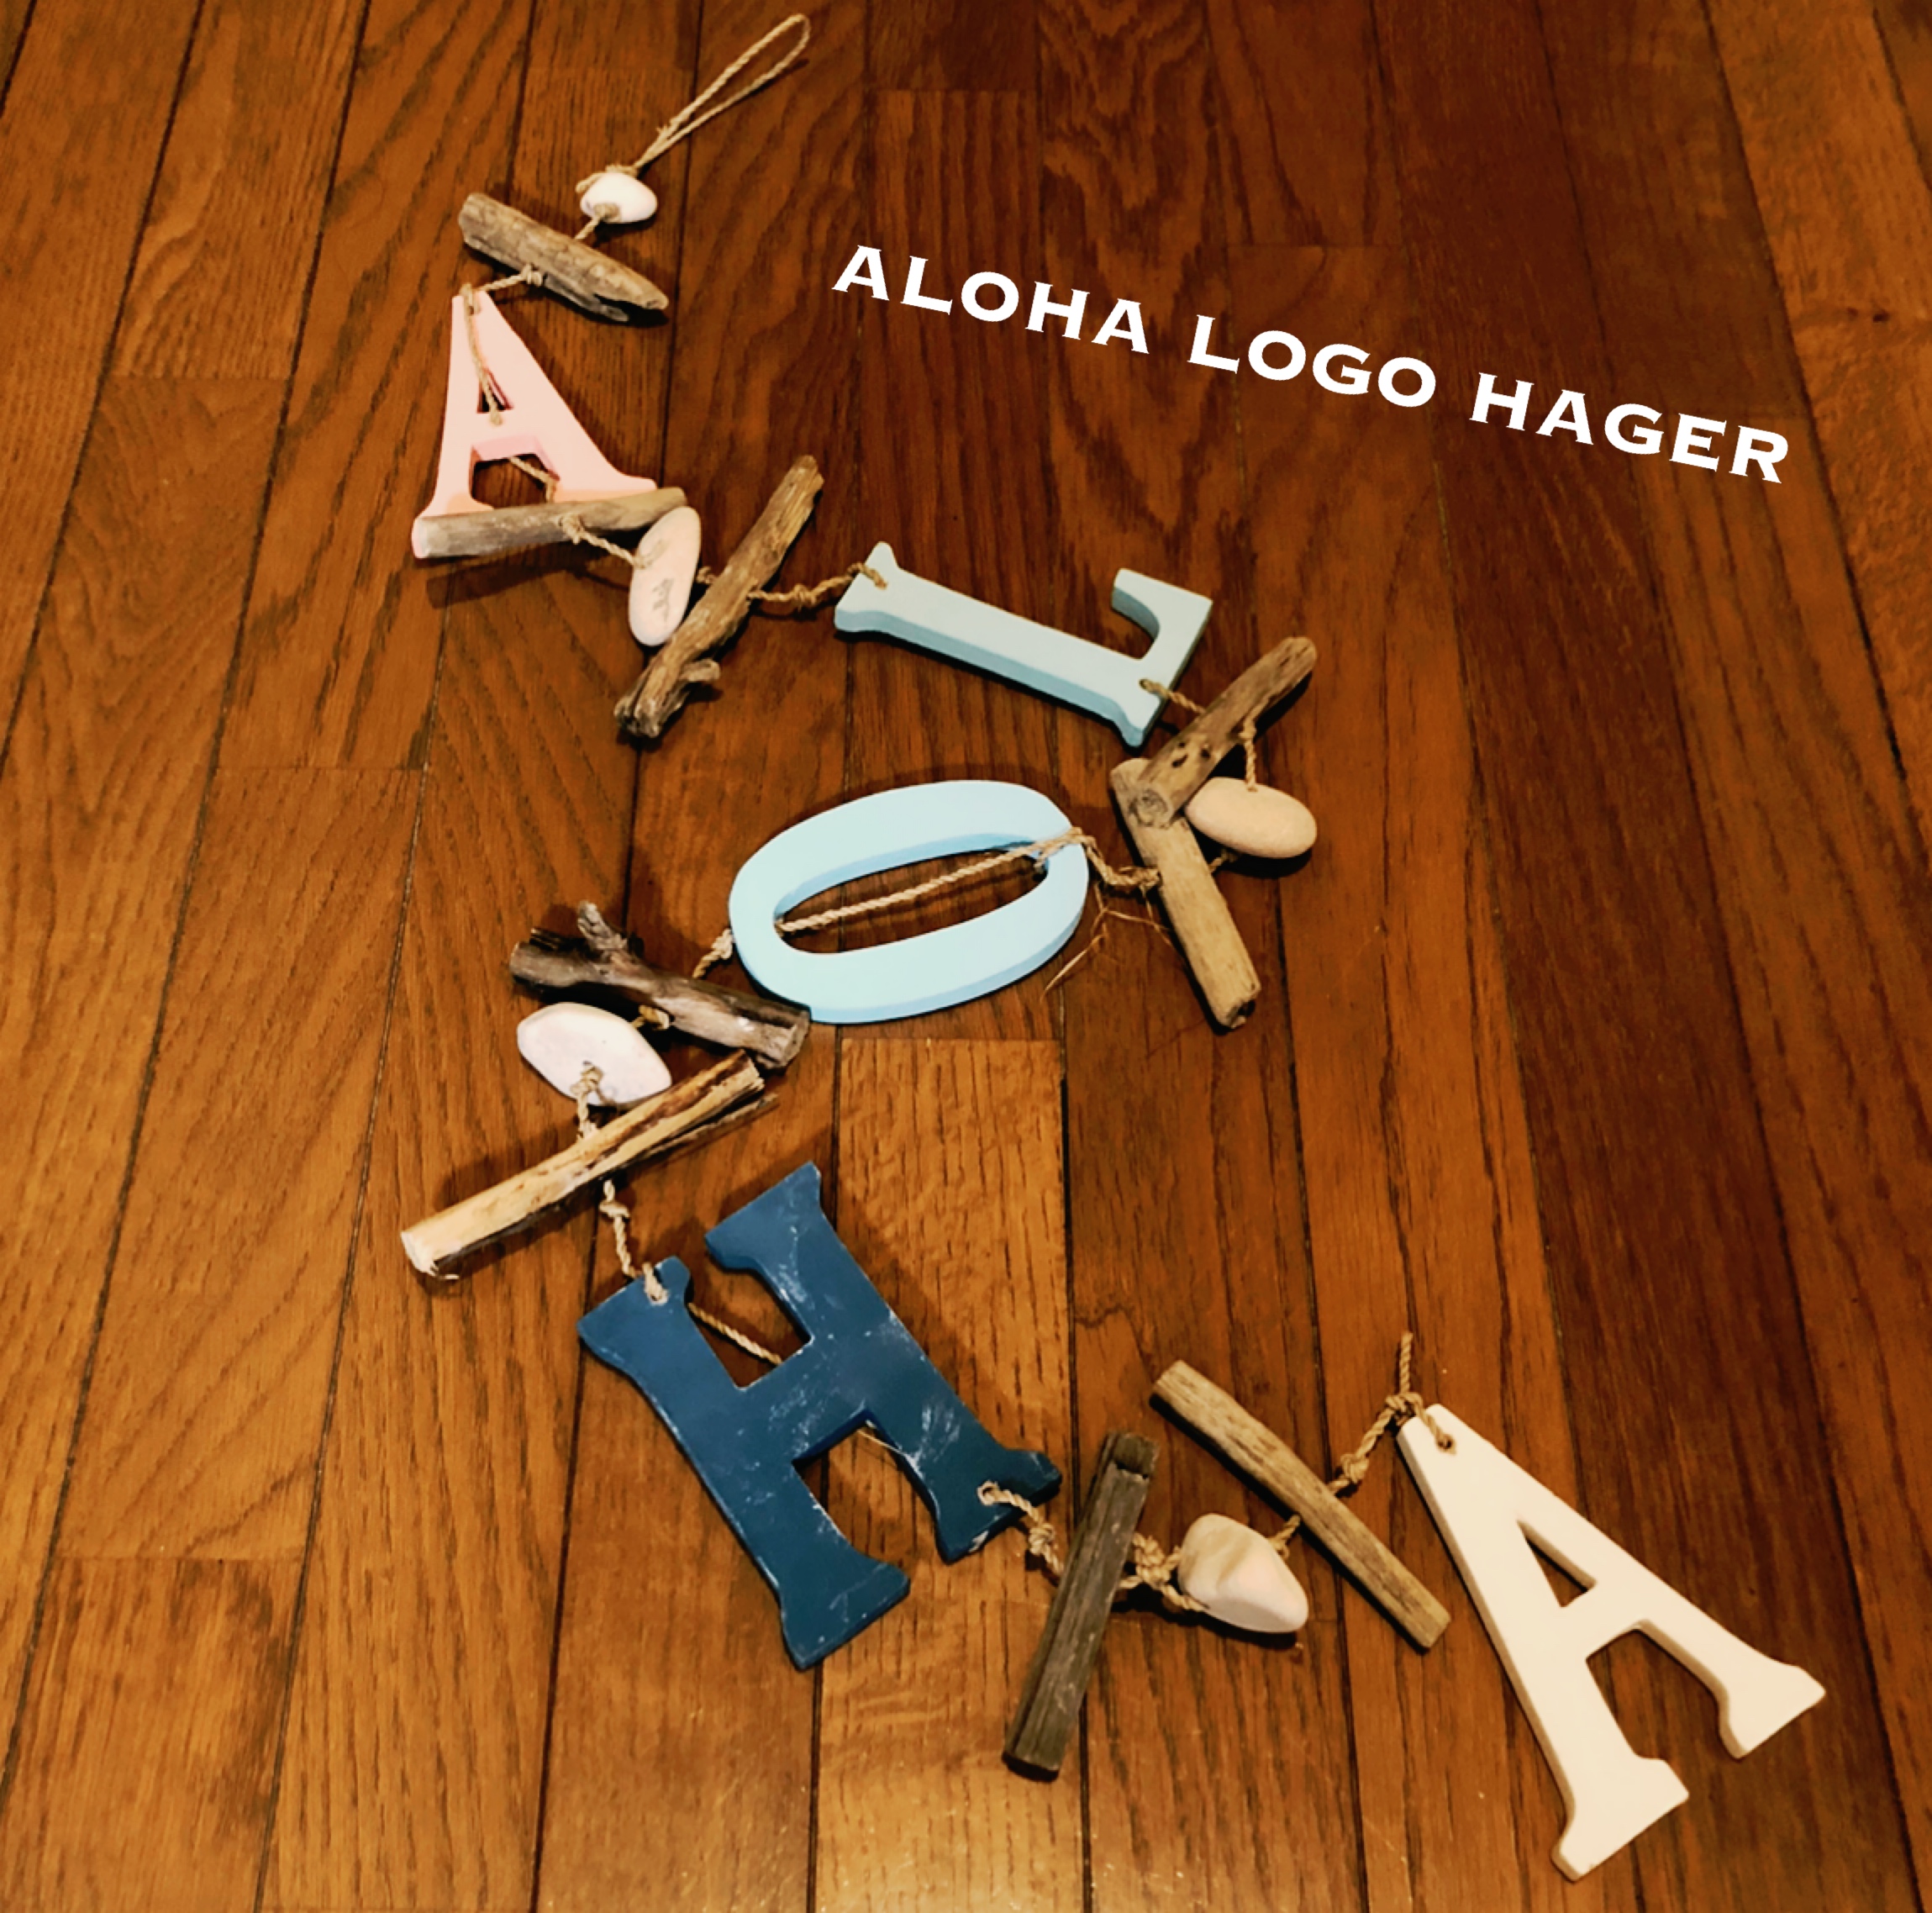 ALOHA LOGO HAGER